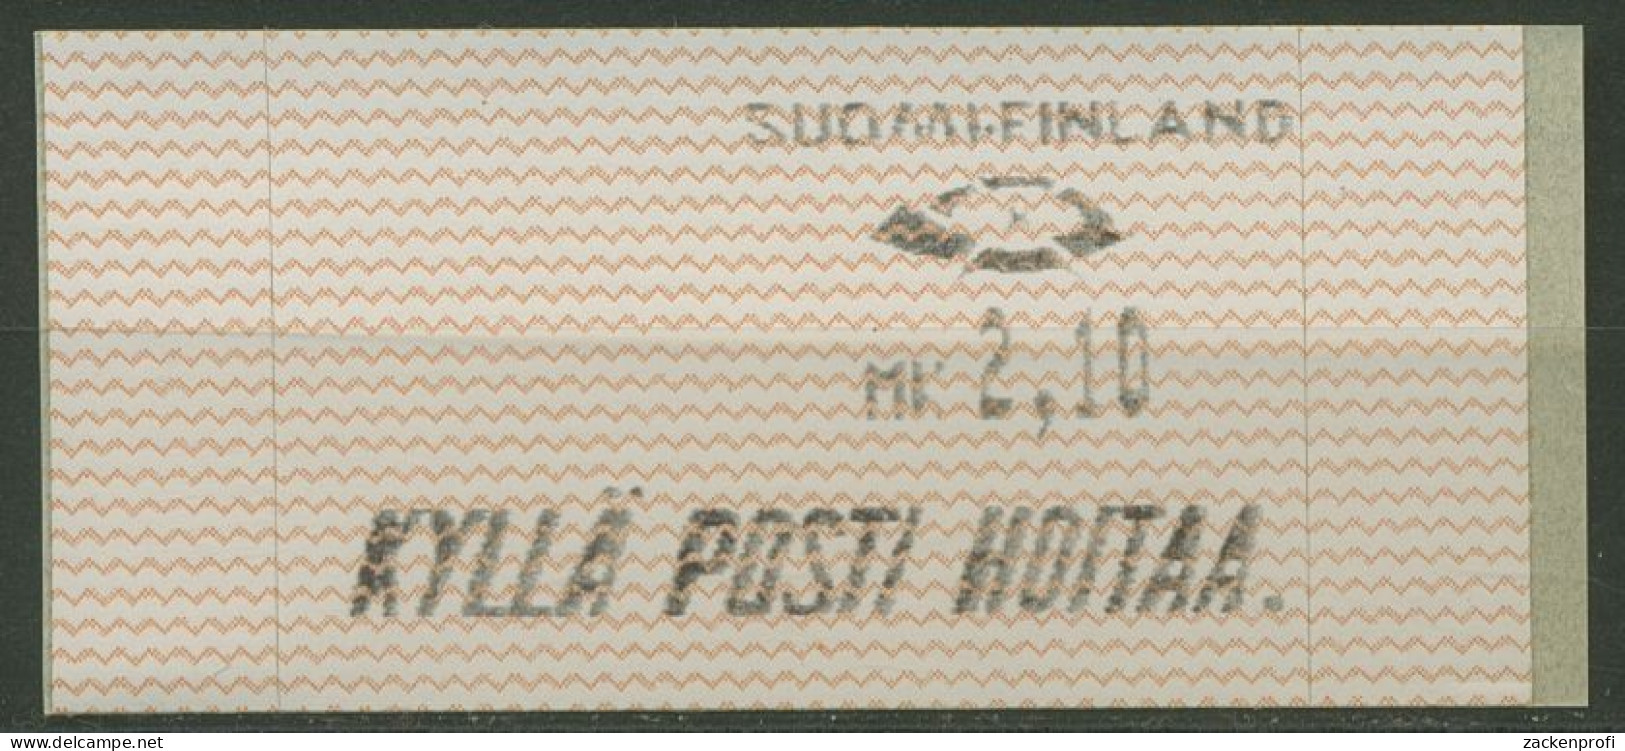 Finnland Automatenmarken 1991 Wellenlinien Einzelwert ATM 10.1 Z 1 Postfrisch - Viñetas De Franqueo [ATM]